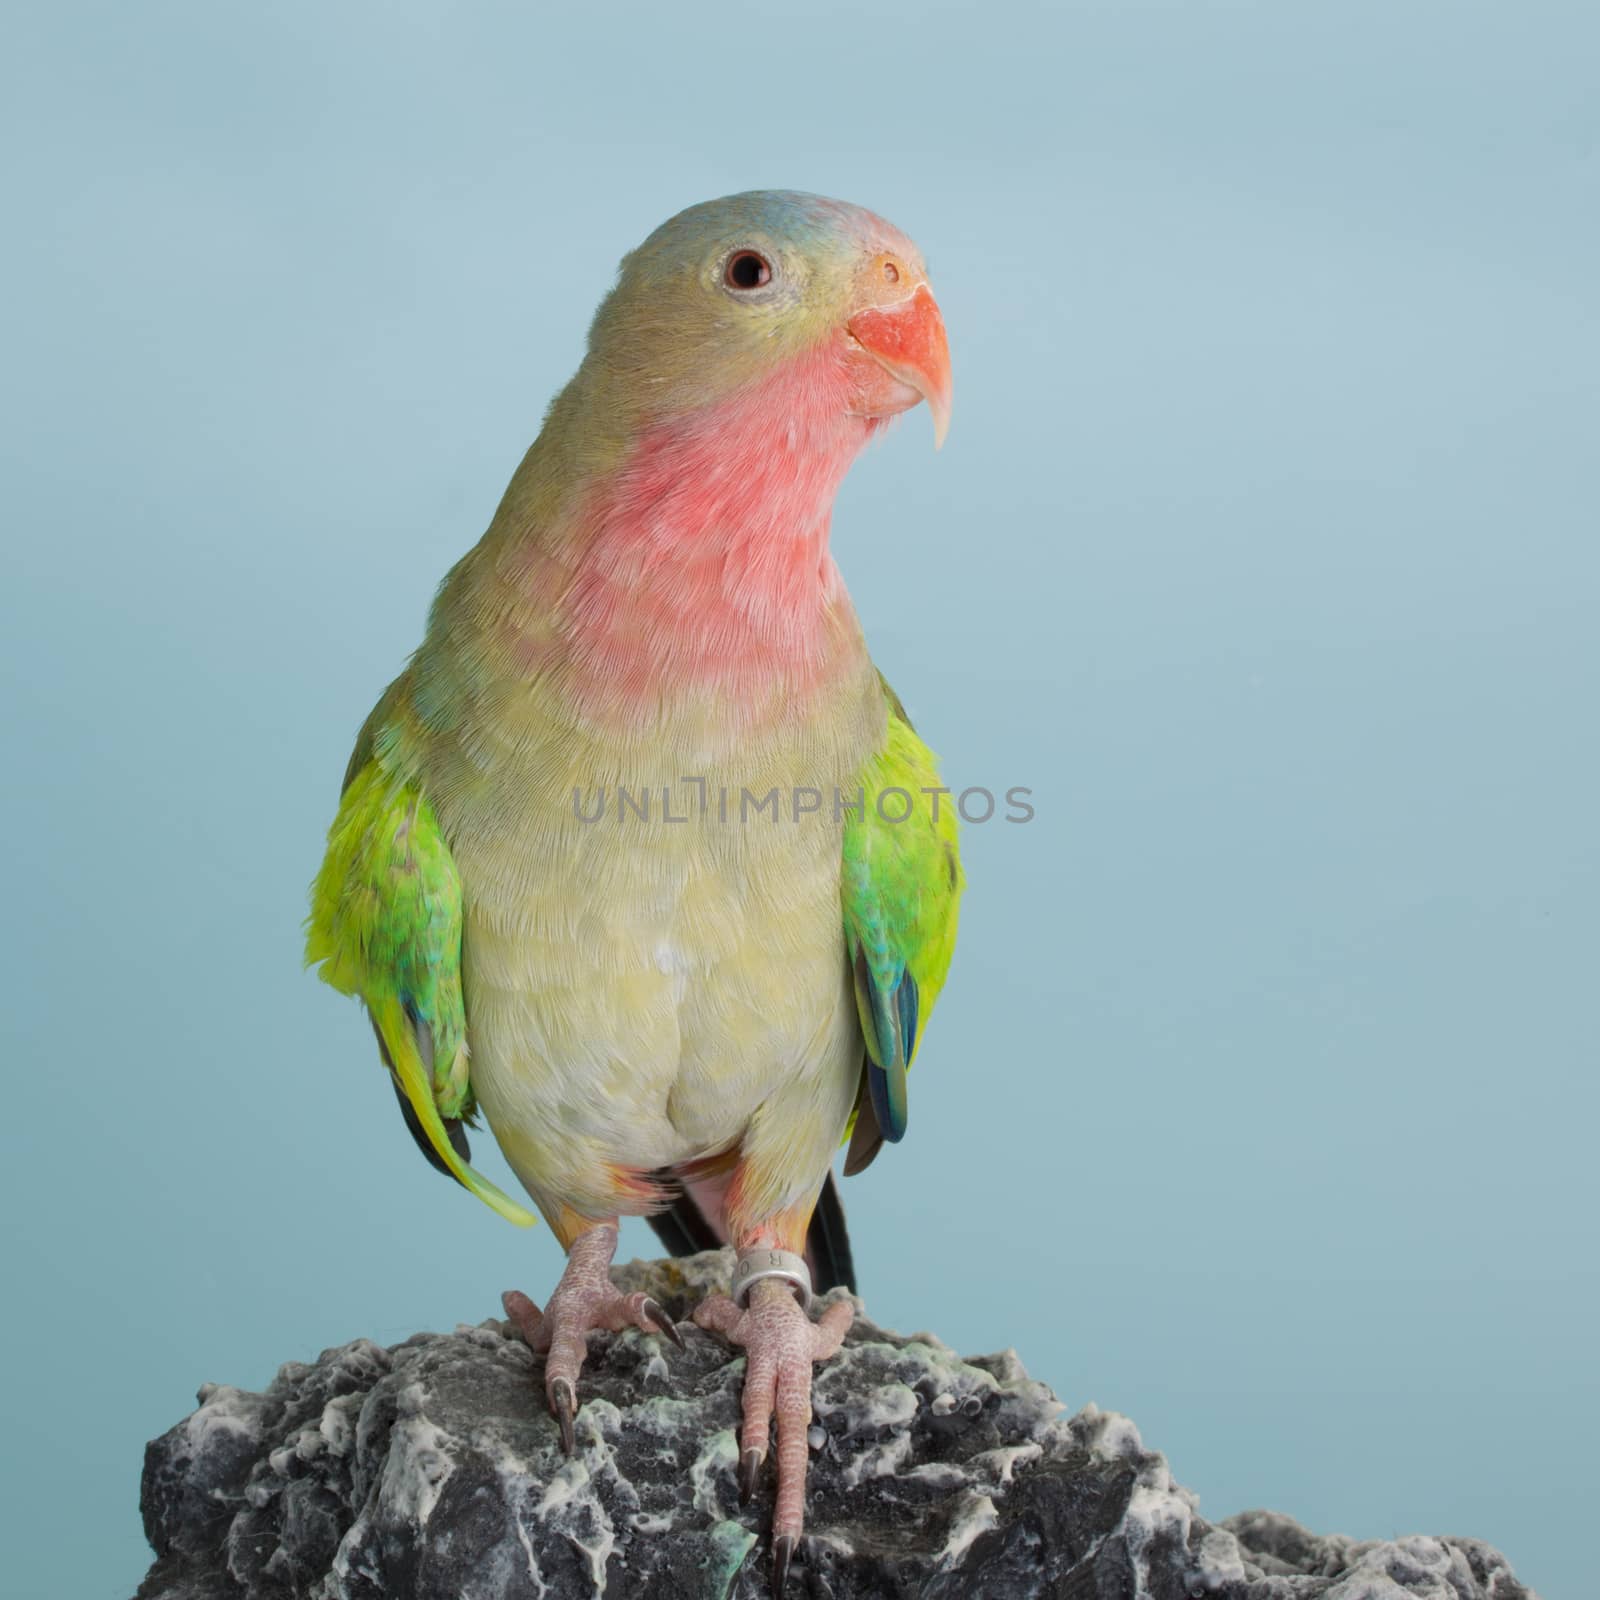 Princess parrot as pet animal by lanalanglois